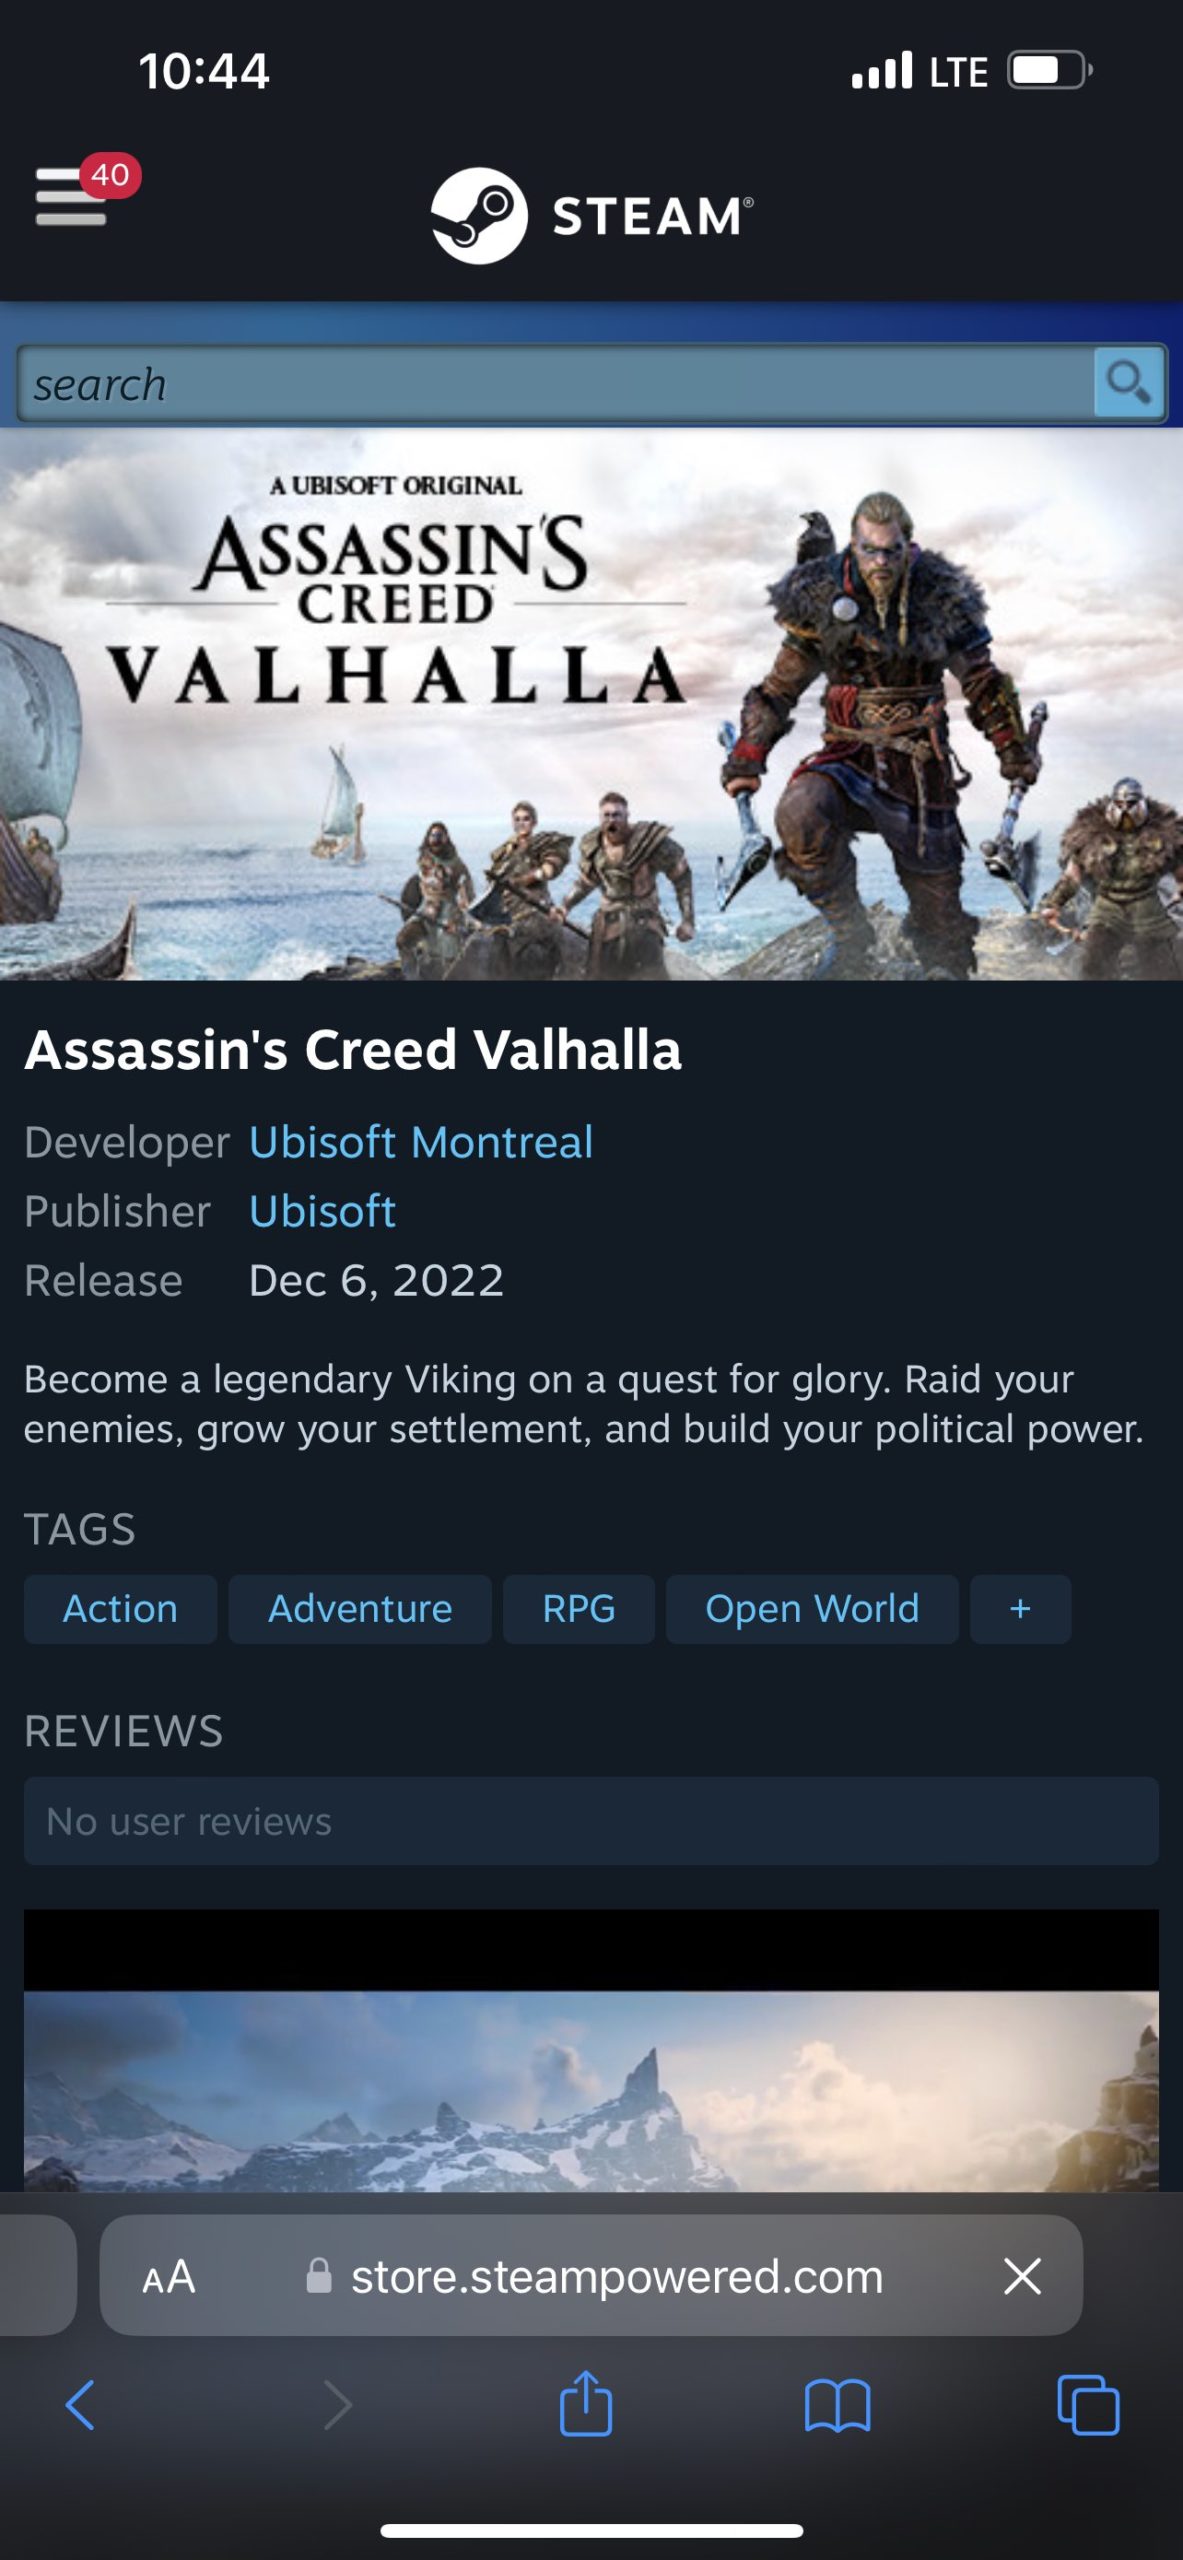 Steam Deck Gameplay - Assassin's Creed Valhalla